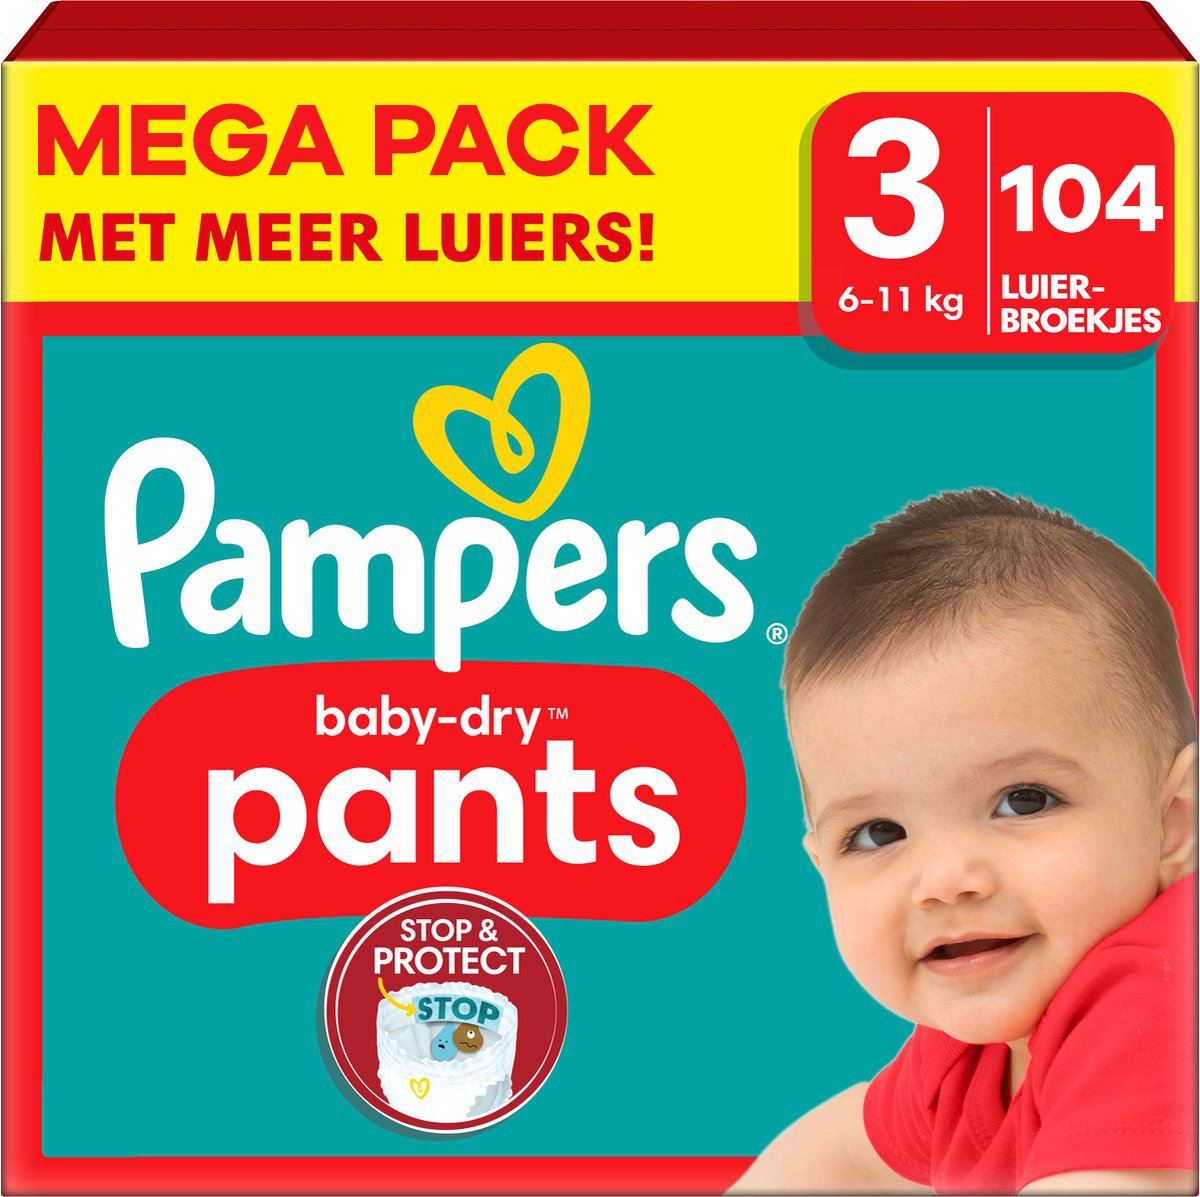 Pampers-Baby-Dry-Pants-Maat-3-104-luierbroekjes-6-11-KG-